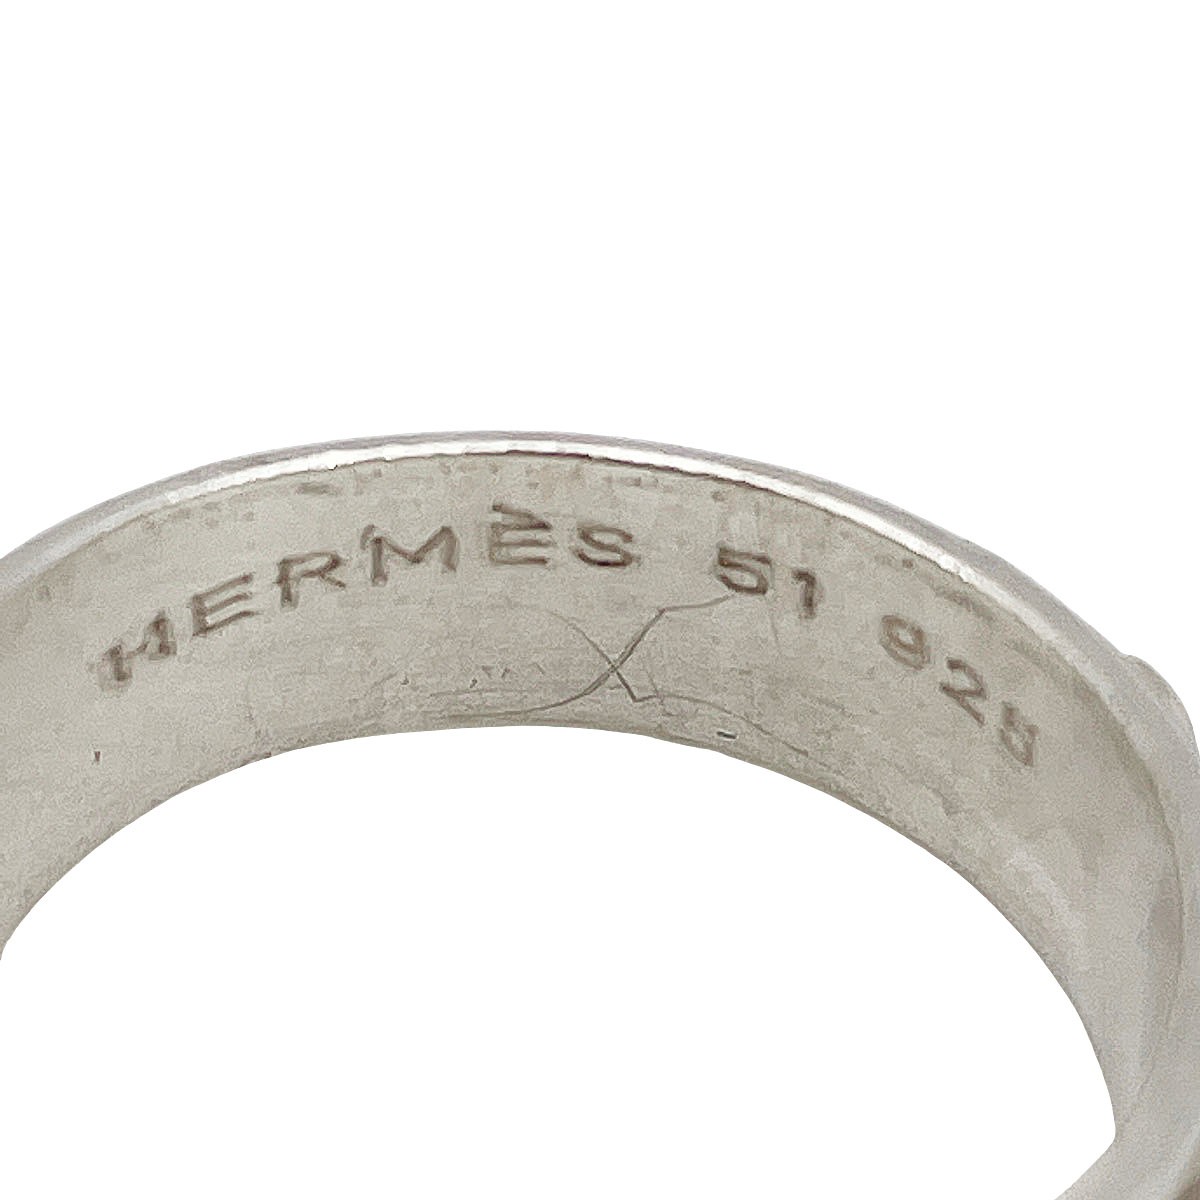 HERMES エルメス メキシコリング 指輪 925 シルバー #51(約11号